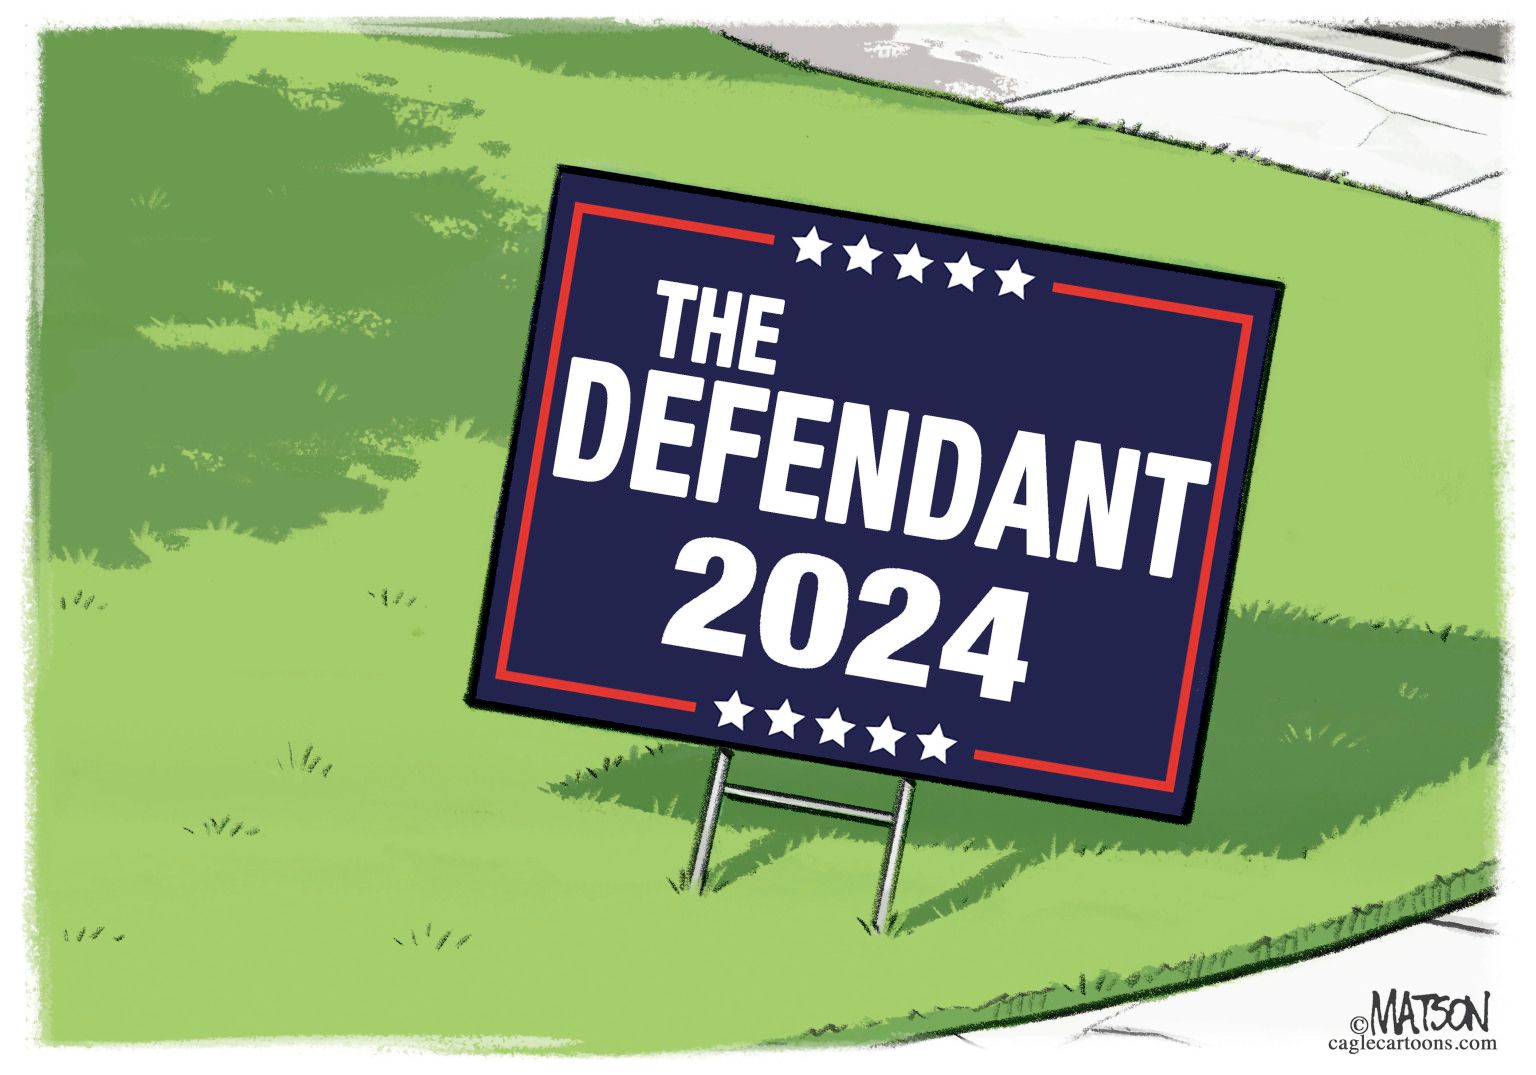 newsjustin.press - Trump 2024 Yard Sign - editorial cartoon